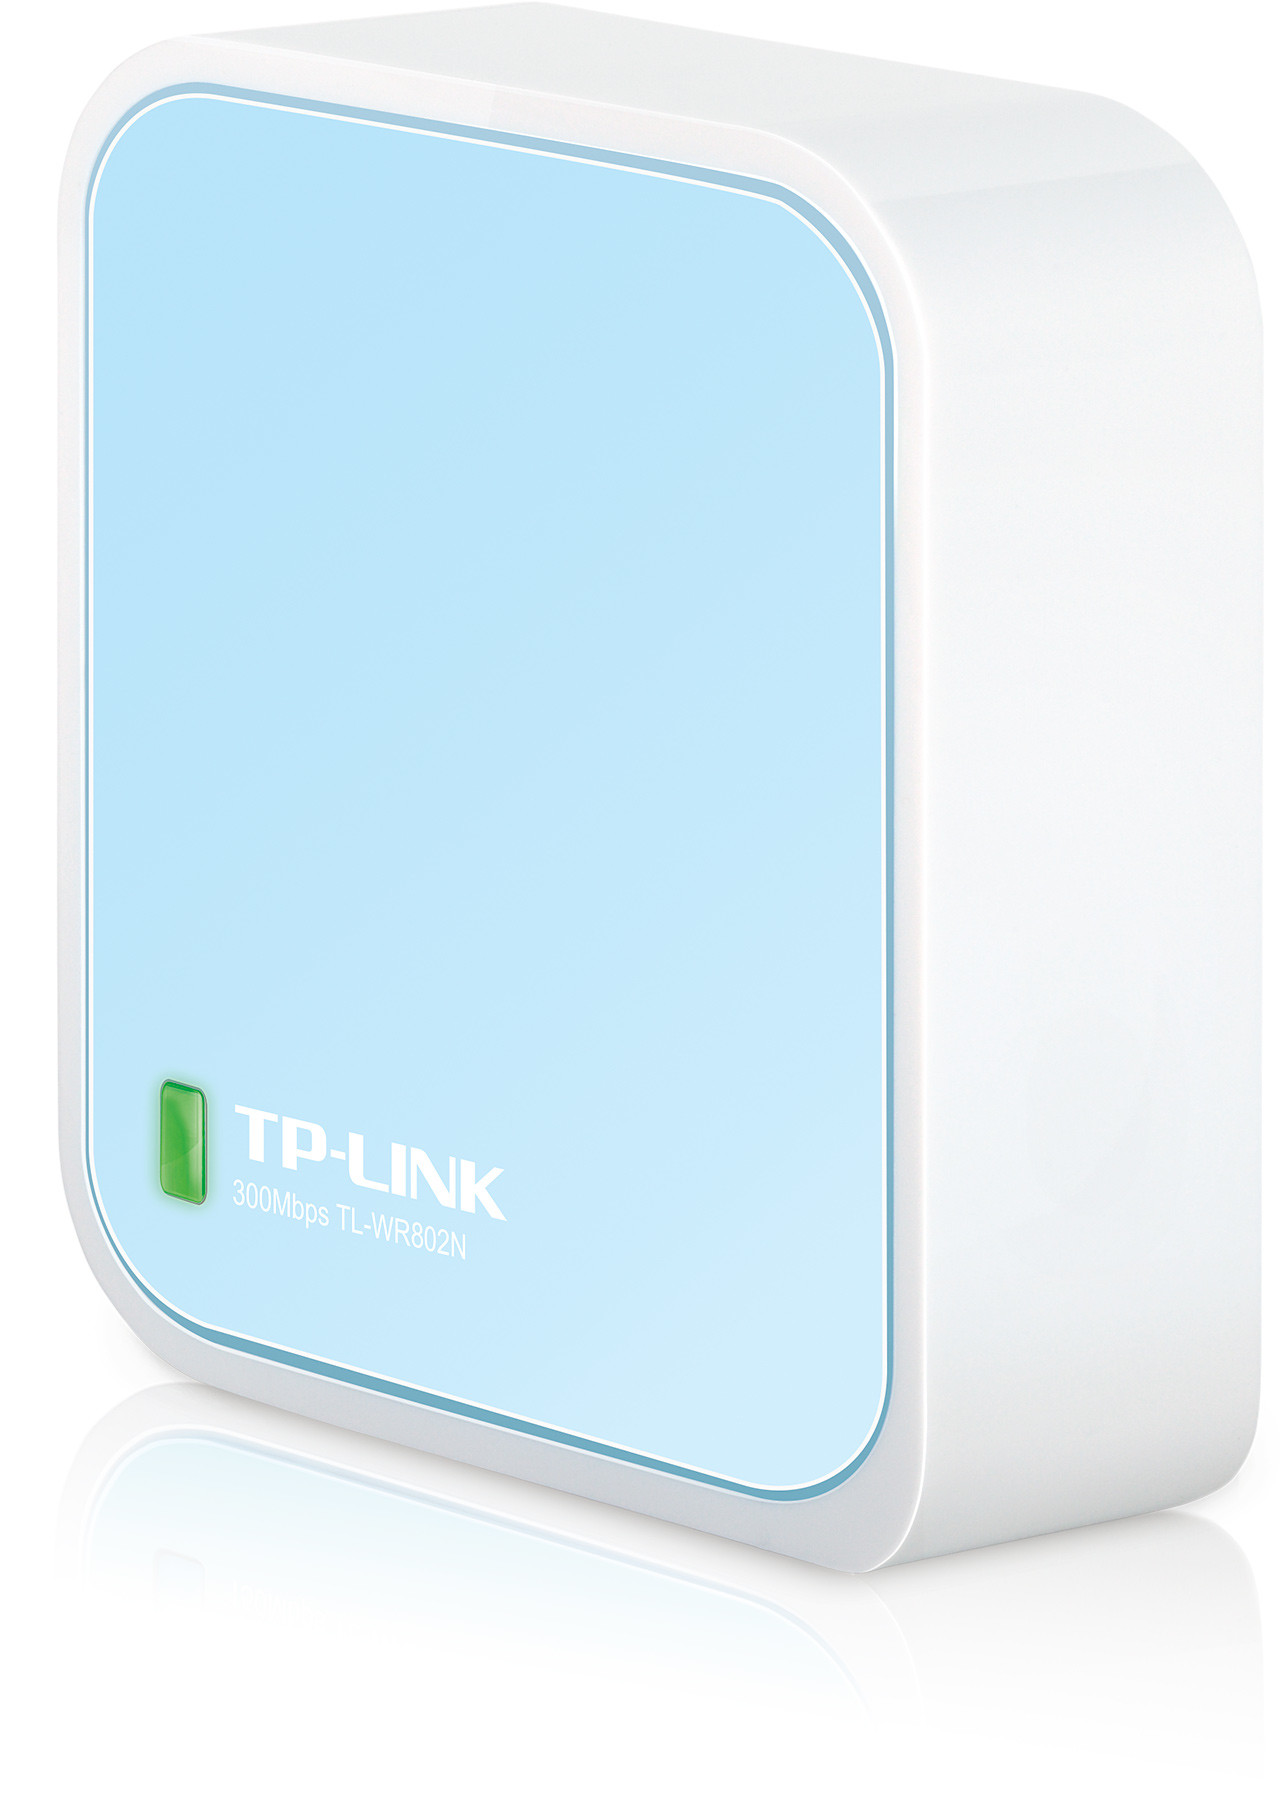 Configuration d'un routeur TP-Link interface Bleu 